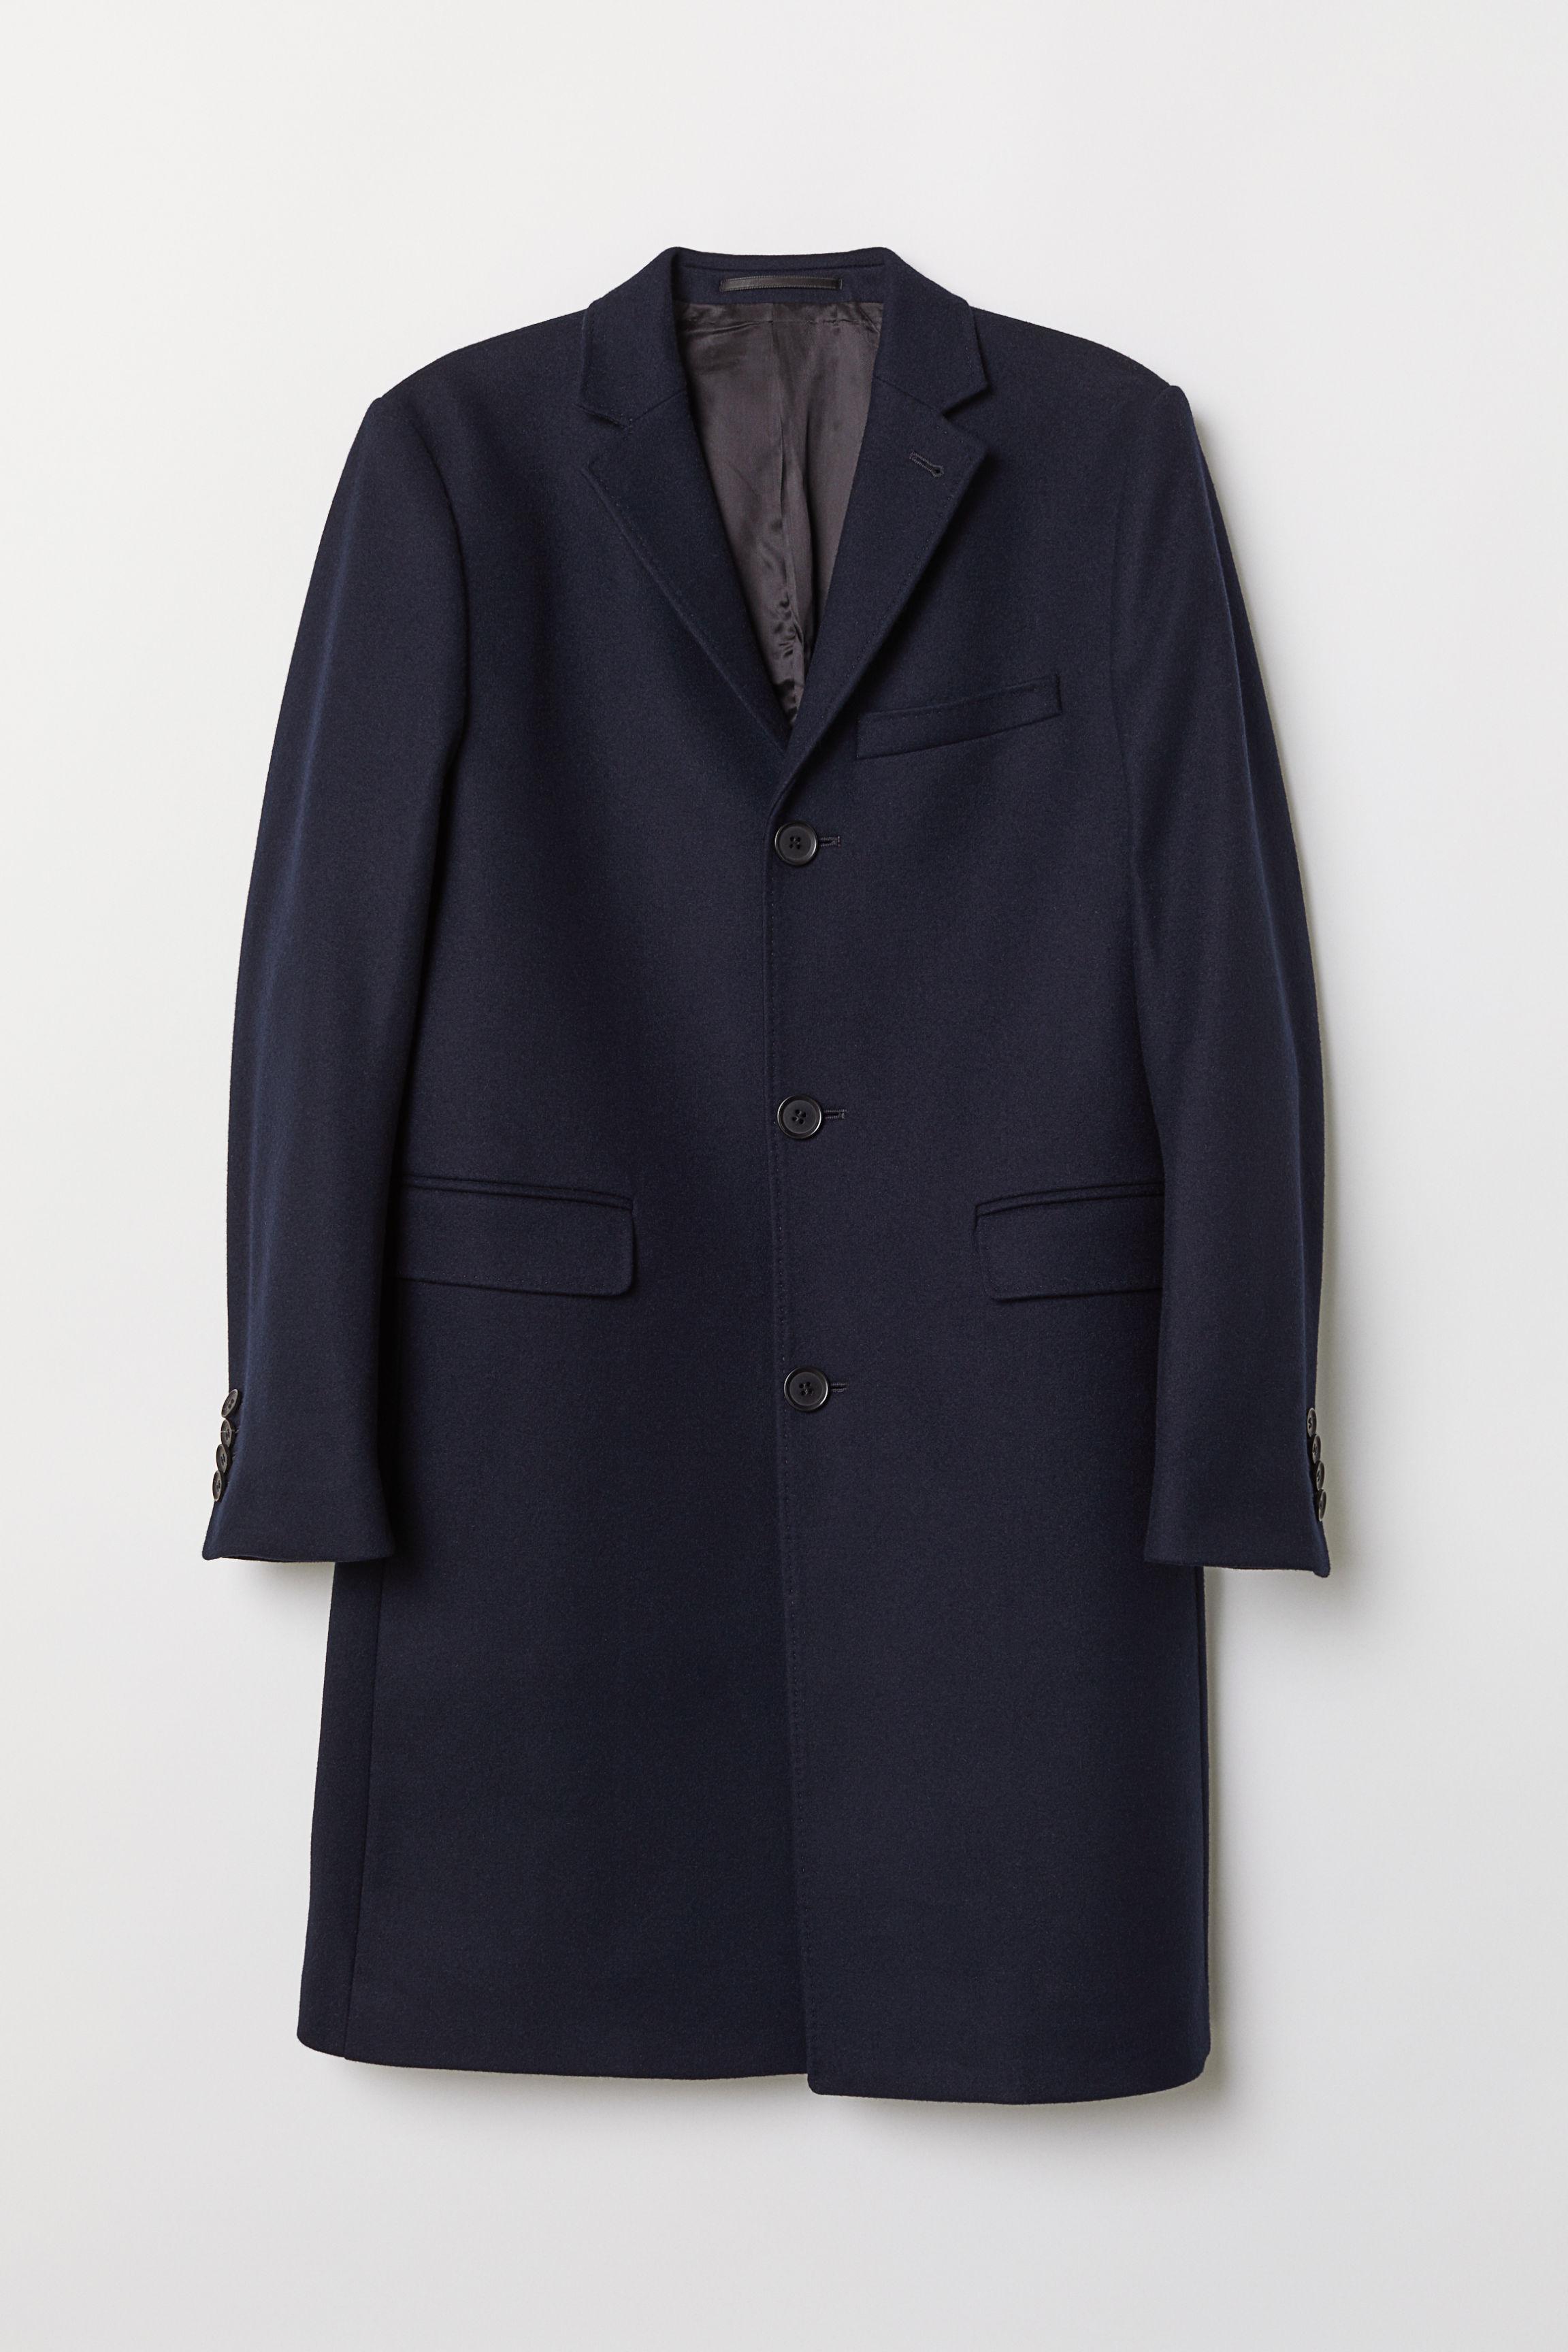 H&M Cashmere-blend Coat in Blue for Men - Lyst